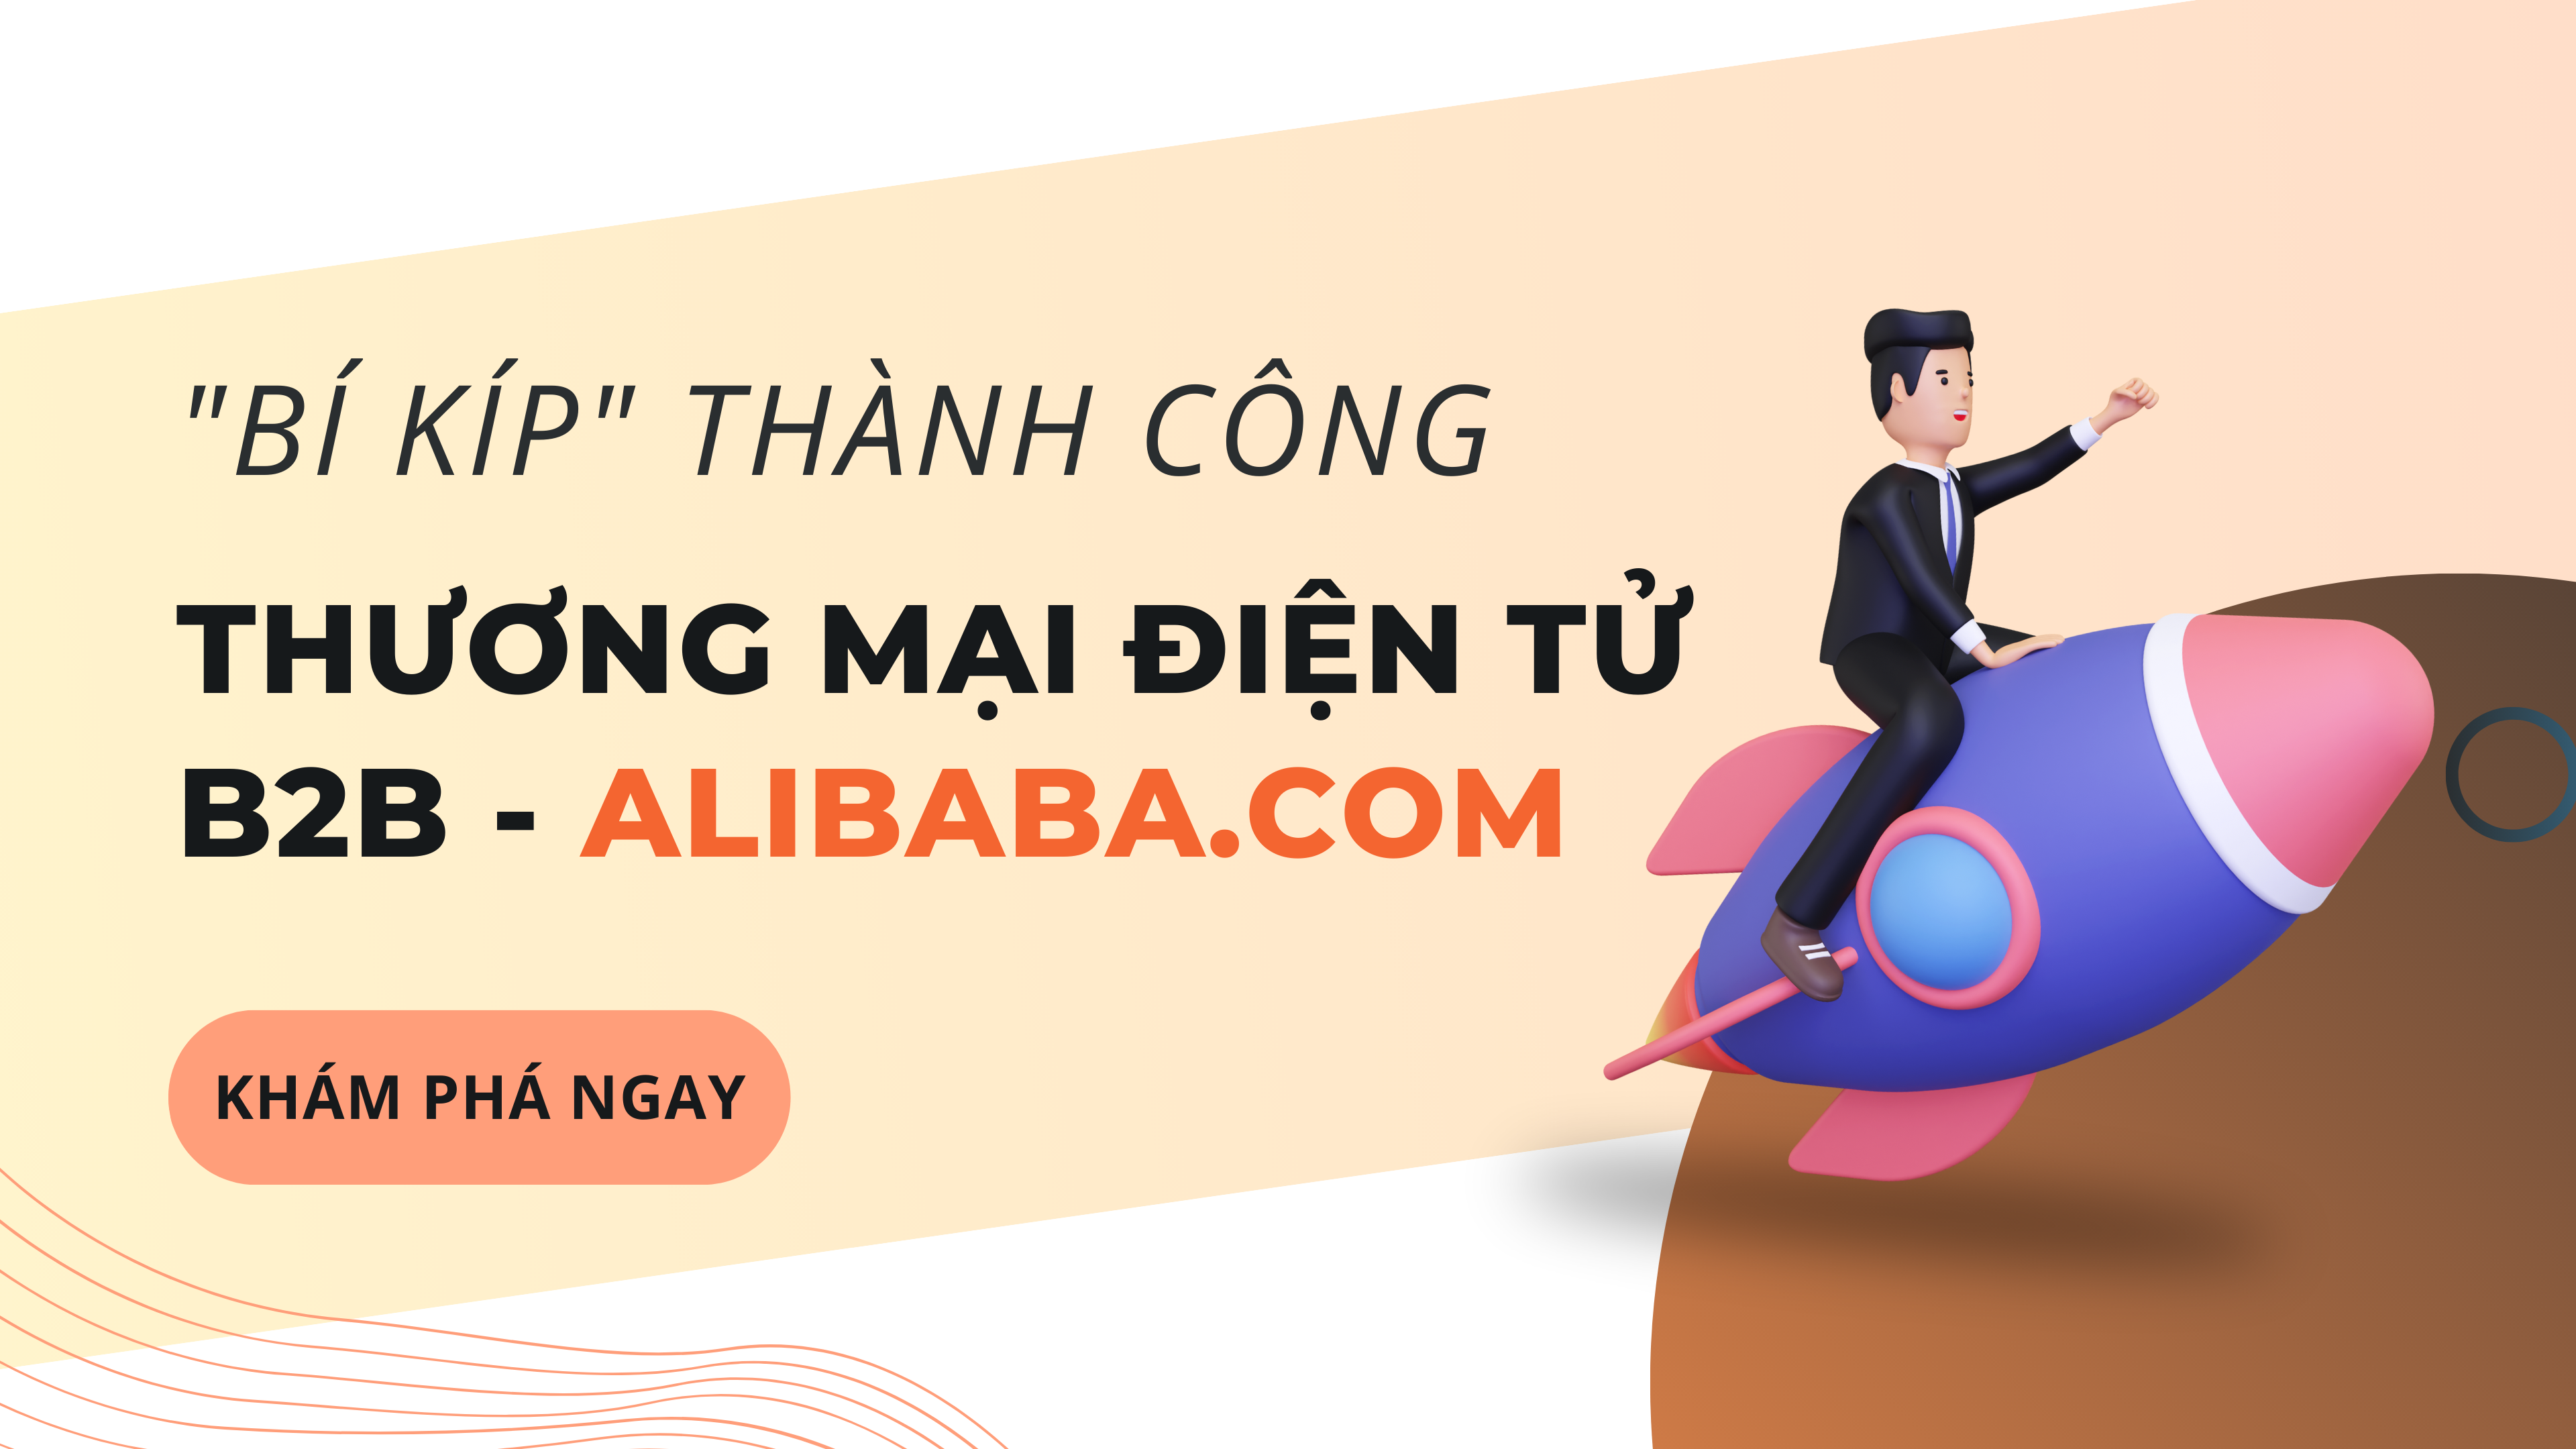 thương mại điện tử B2B, doanh nghiệp xuất khẩu, Alibaba.com